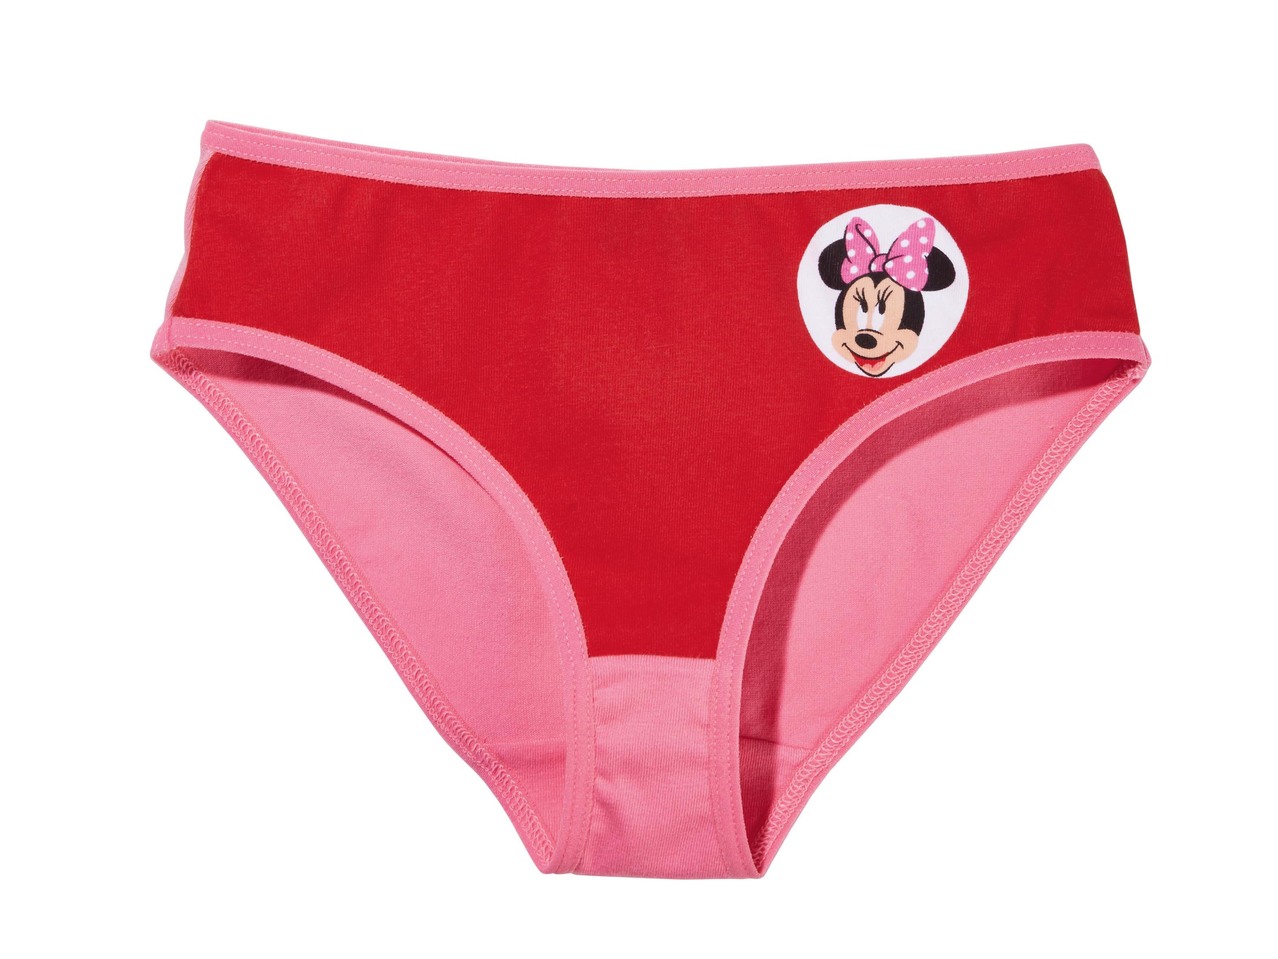 Girls' Underwear Set "Frozen, Minnie"